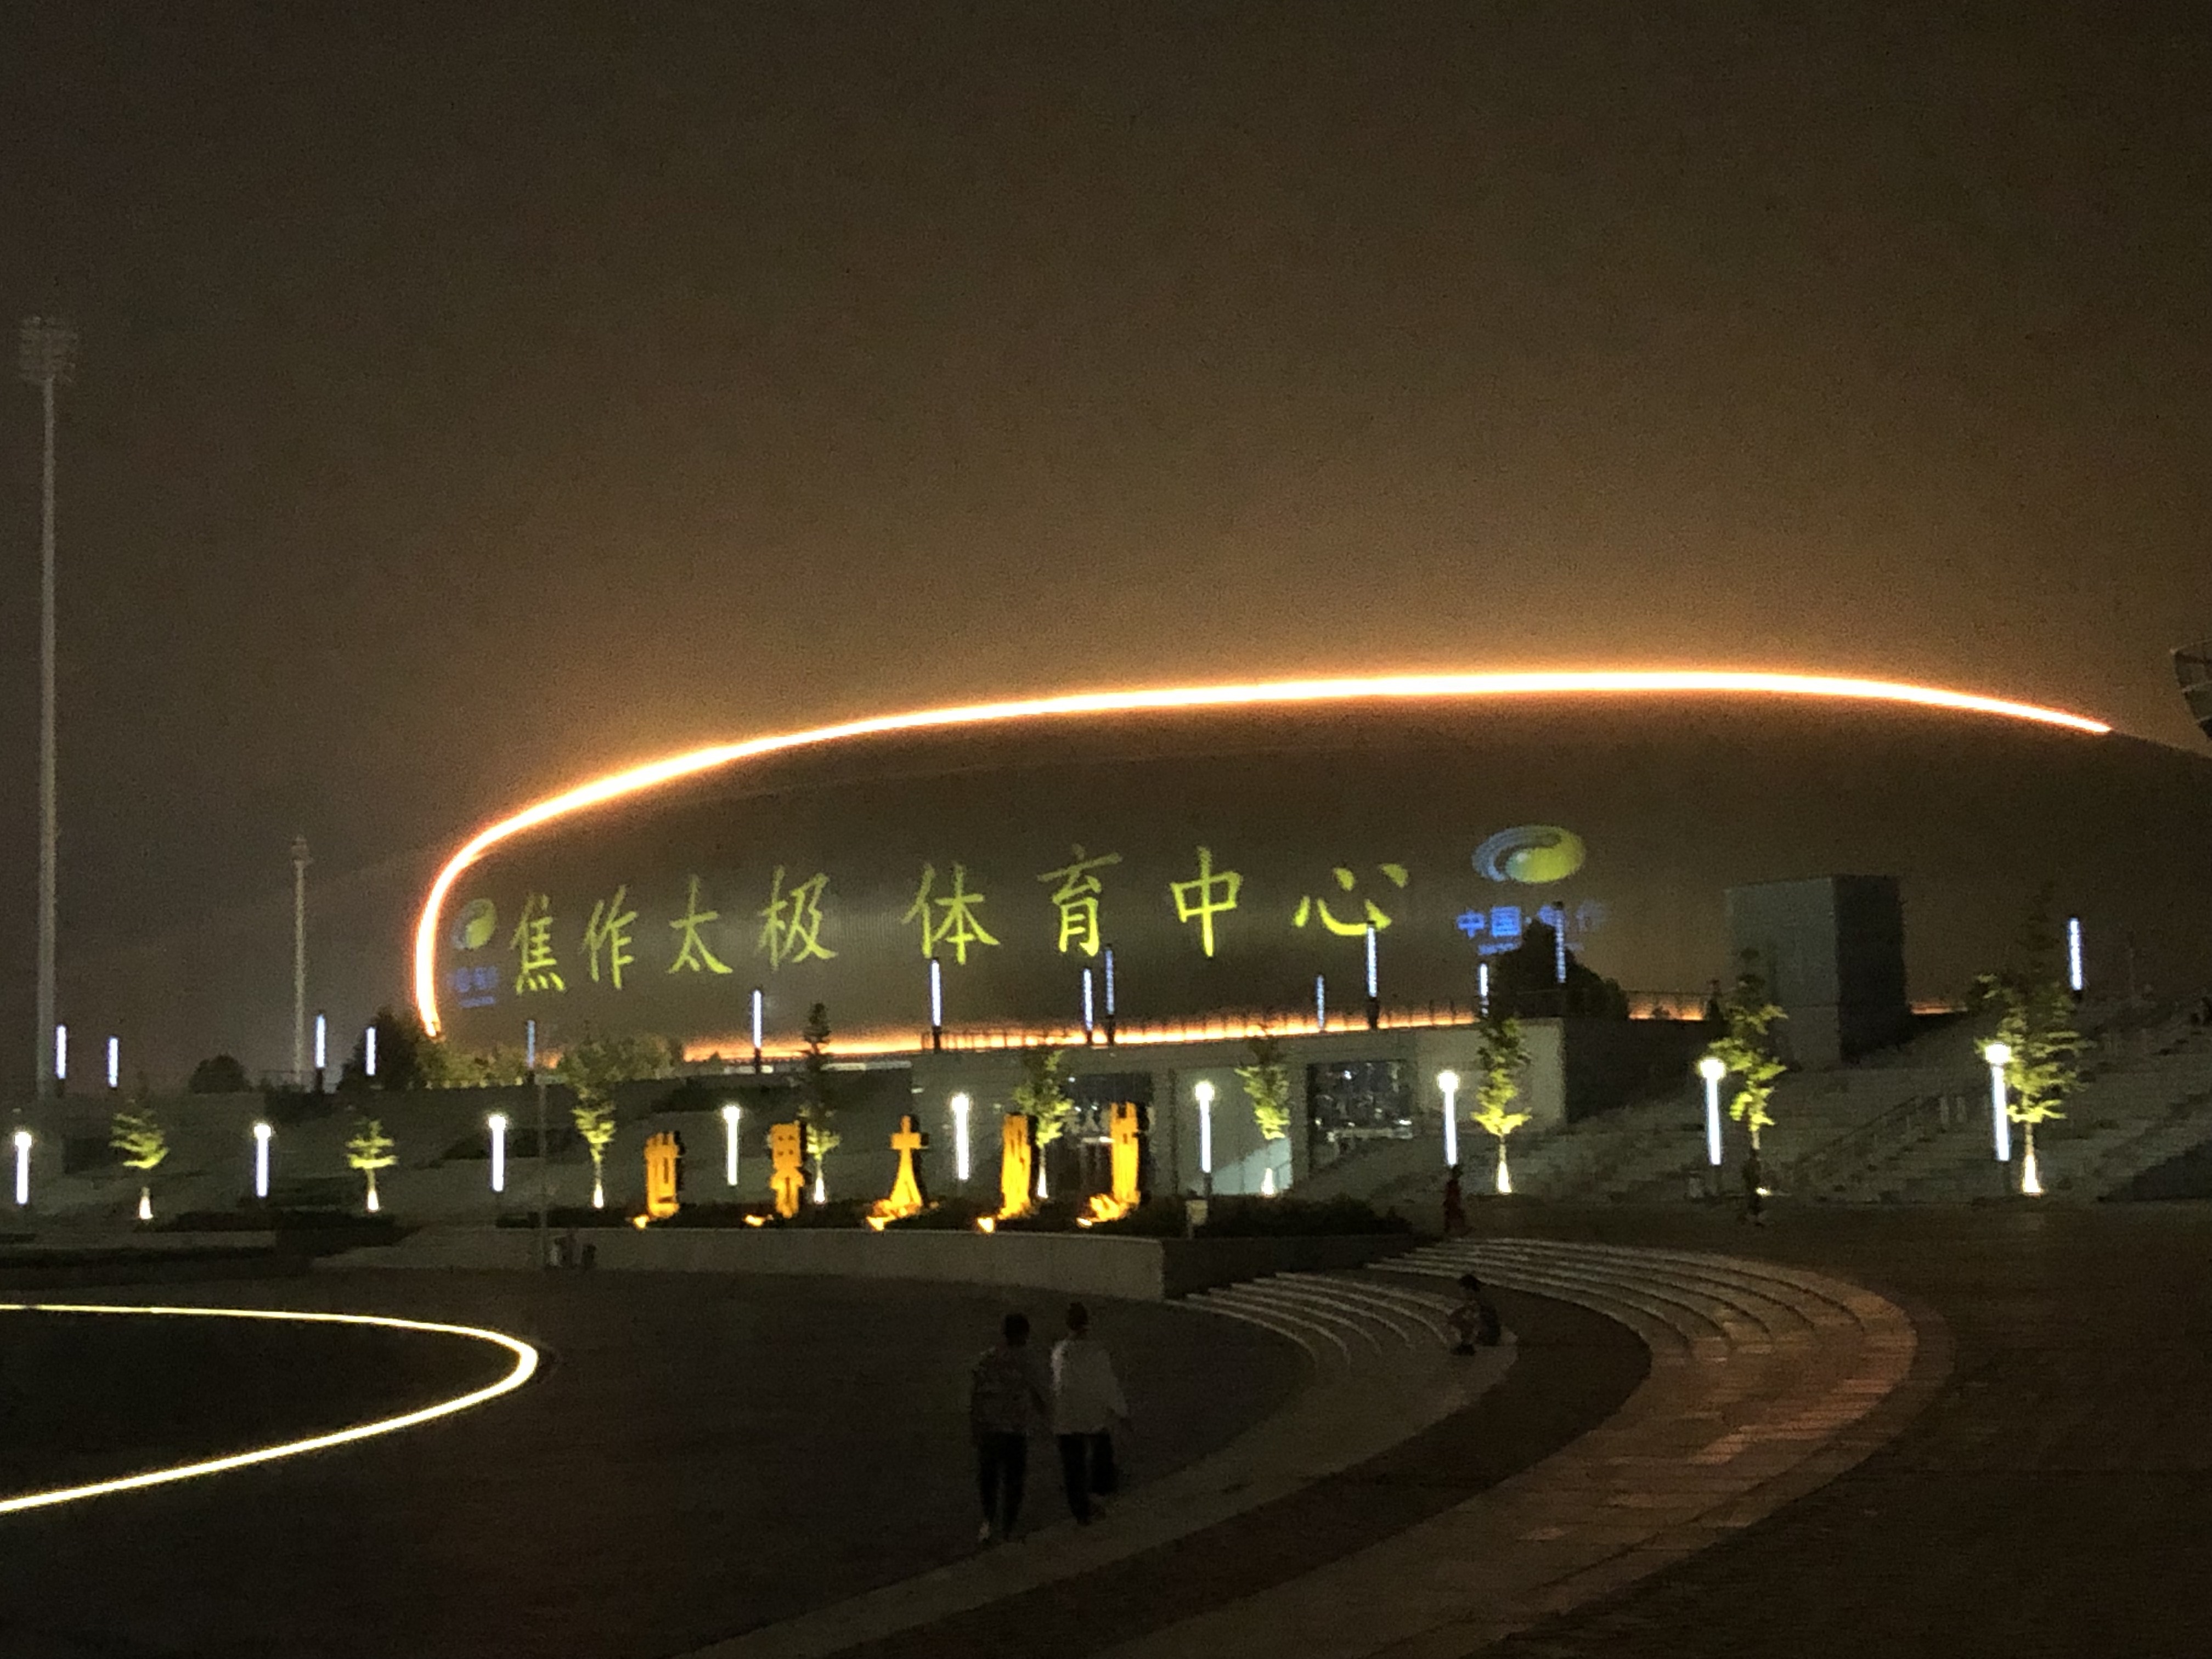 焦作市太极体育中心照明改造项目（2019年）——2021神灯奖申报工程